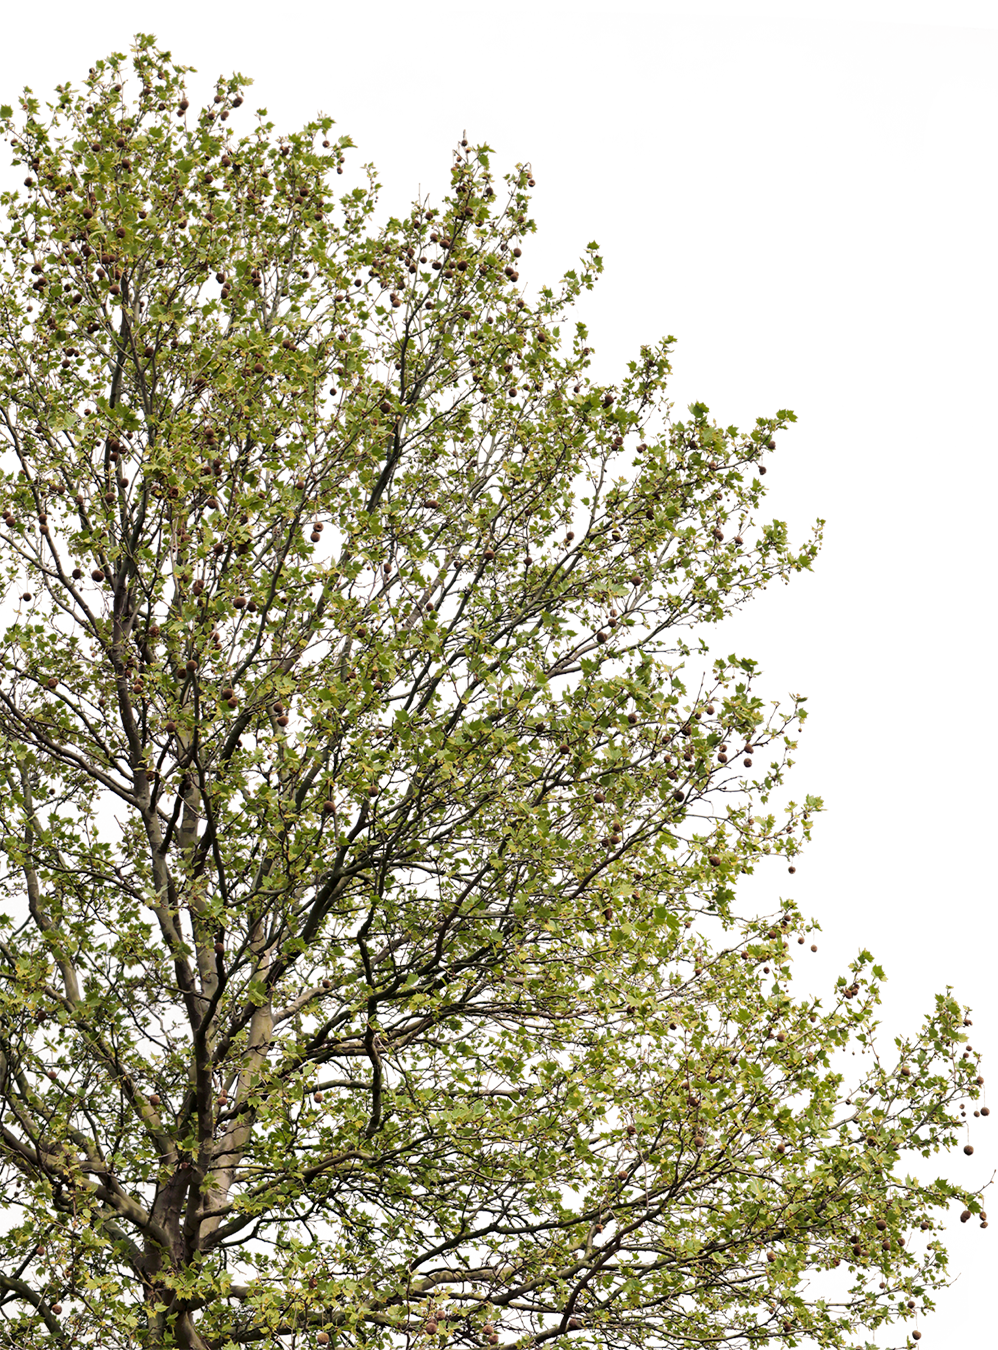 Platanus acerifolia l03